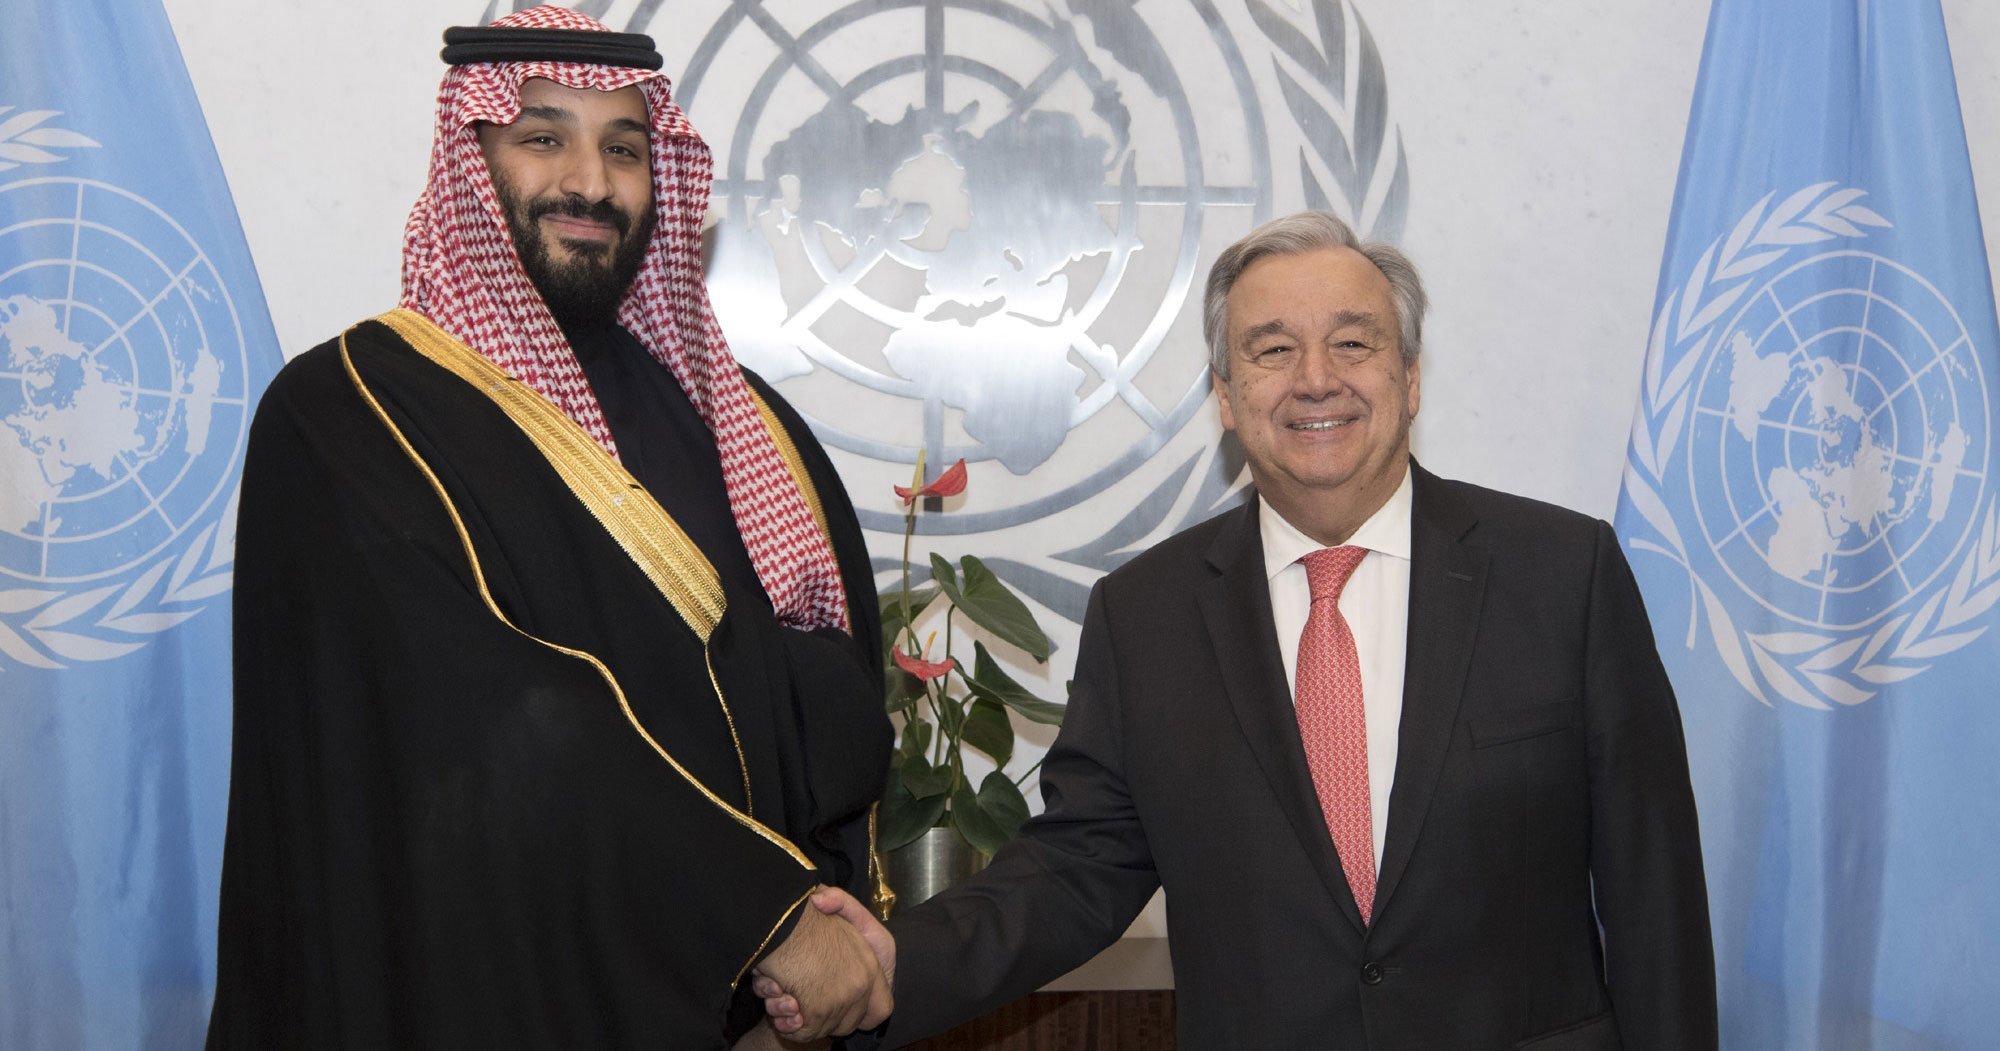 Наследный принц  Саудовской Аравии Мухаммед бен Сальман Аль Сауд сообщил Генеральному секретарю Антониу Гутерришу  о предоставлении почти миллиарда долларов на помощь Йемену